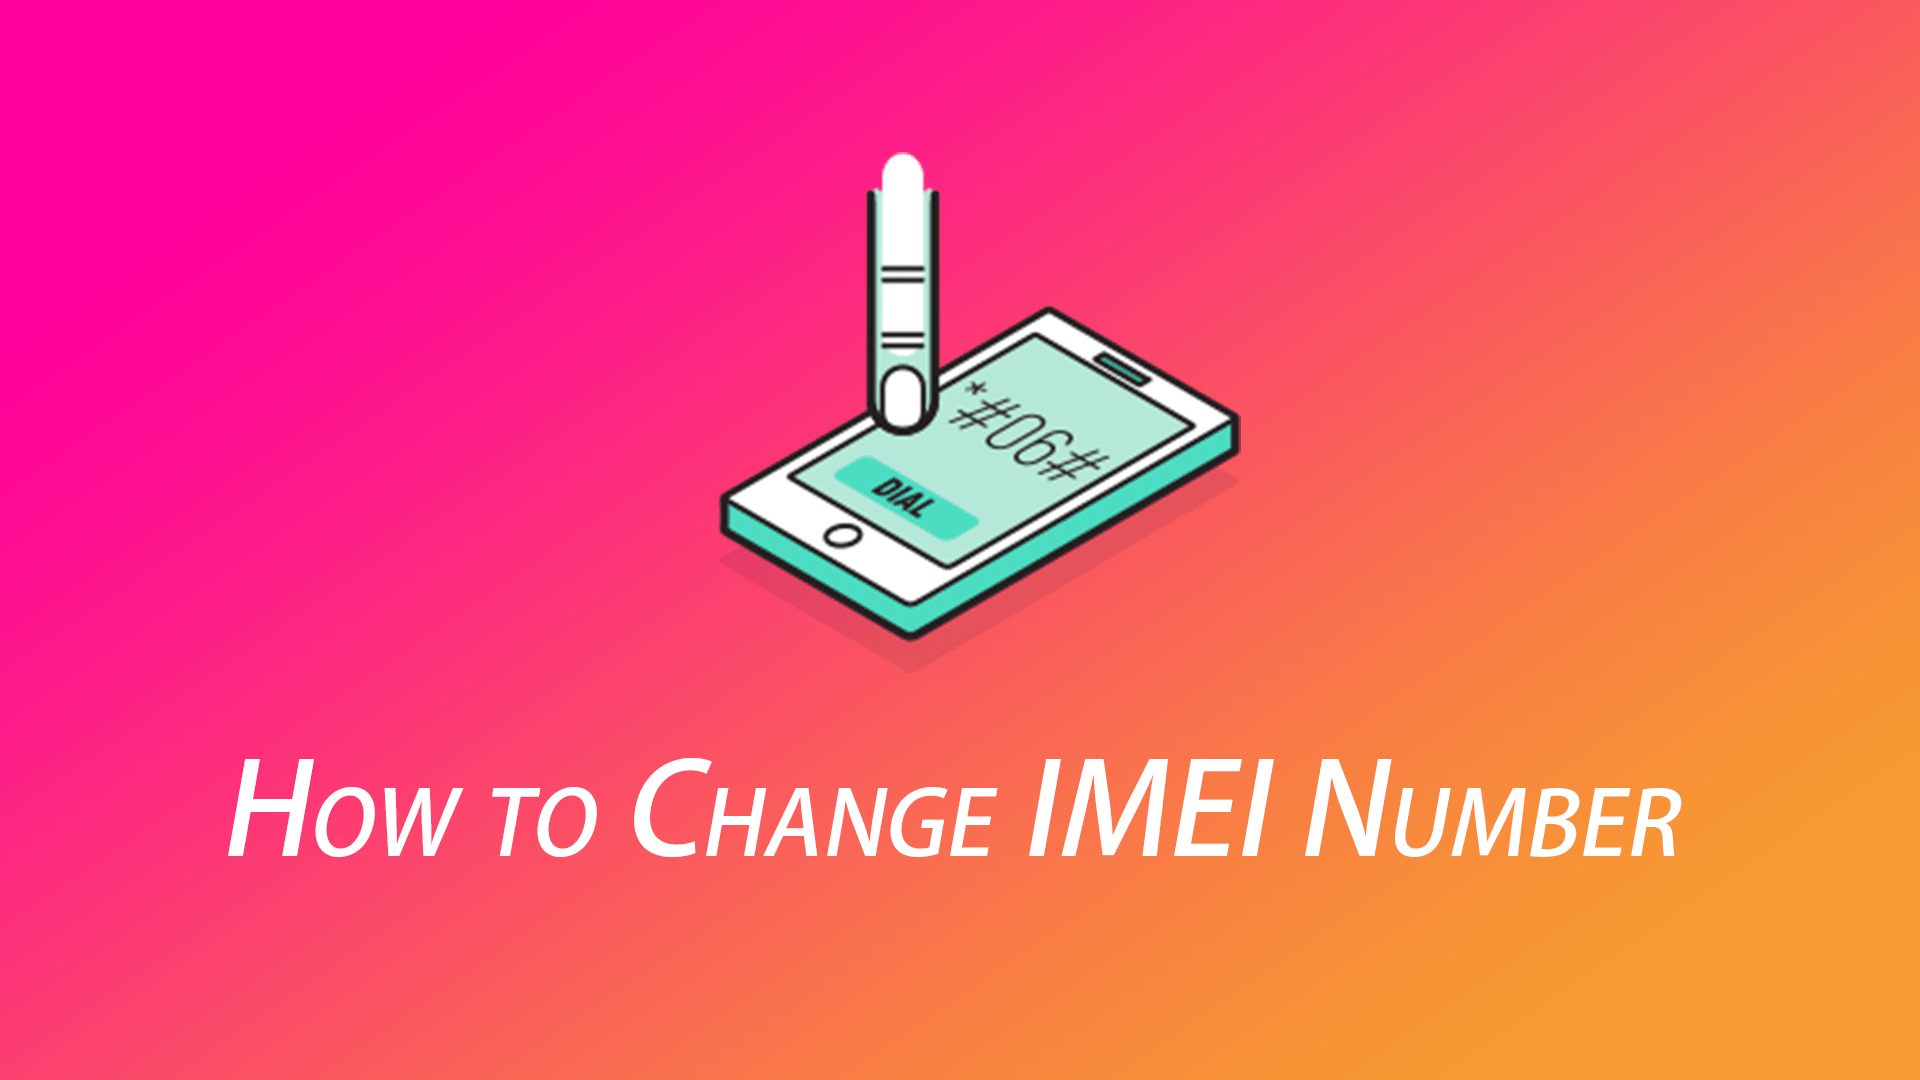 آموزش تغییر و ویرایش شماره سریال (IMEI) گوشی های اندرویدی